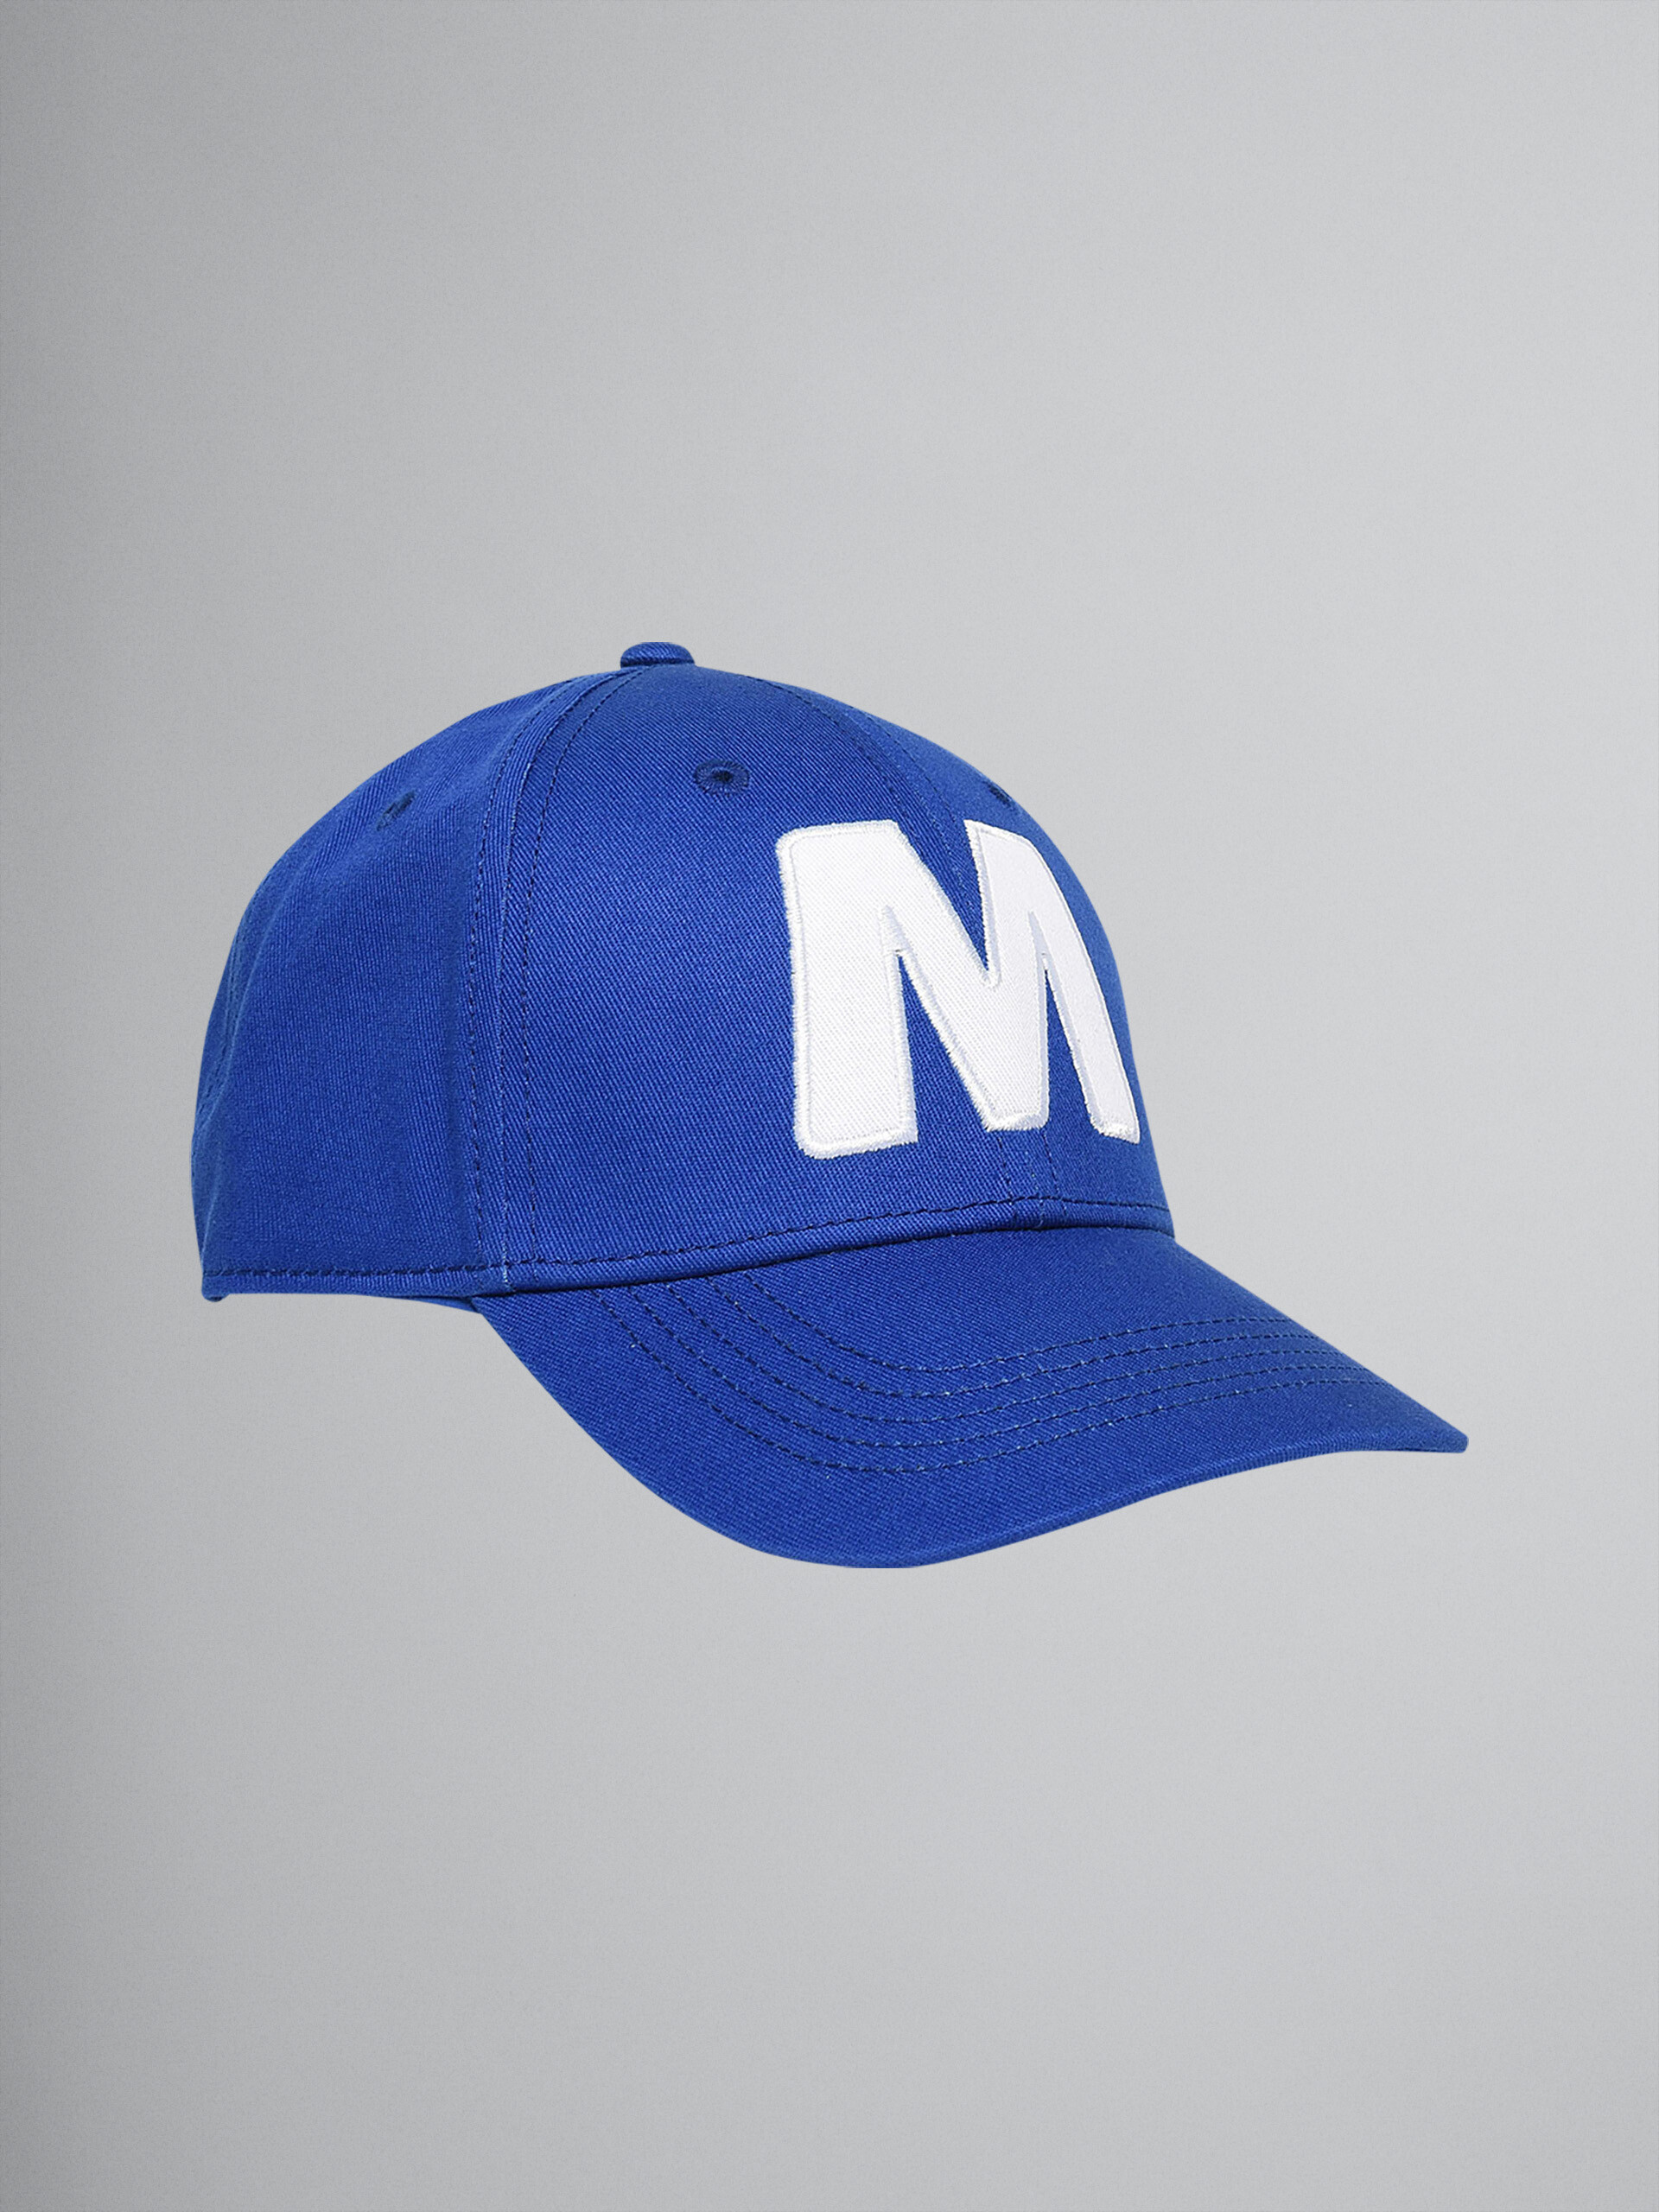 Gorra de béisbol "M" de gabardina de algodón azul - Gorras - Image 1